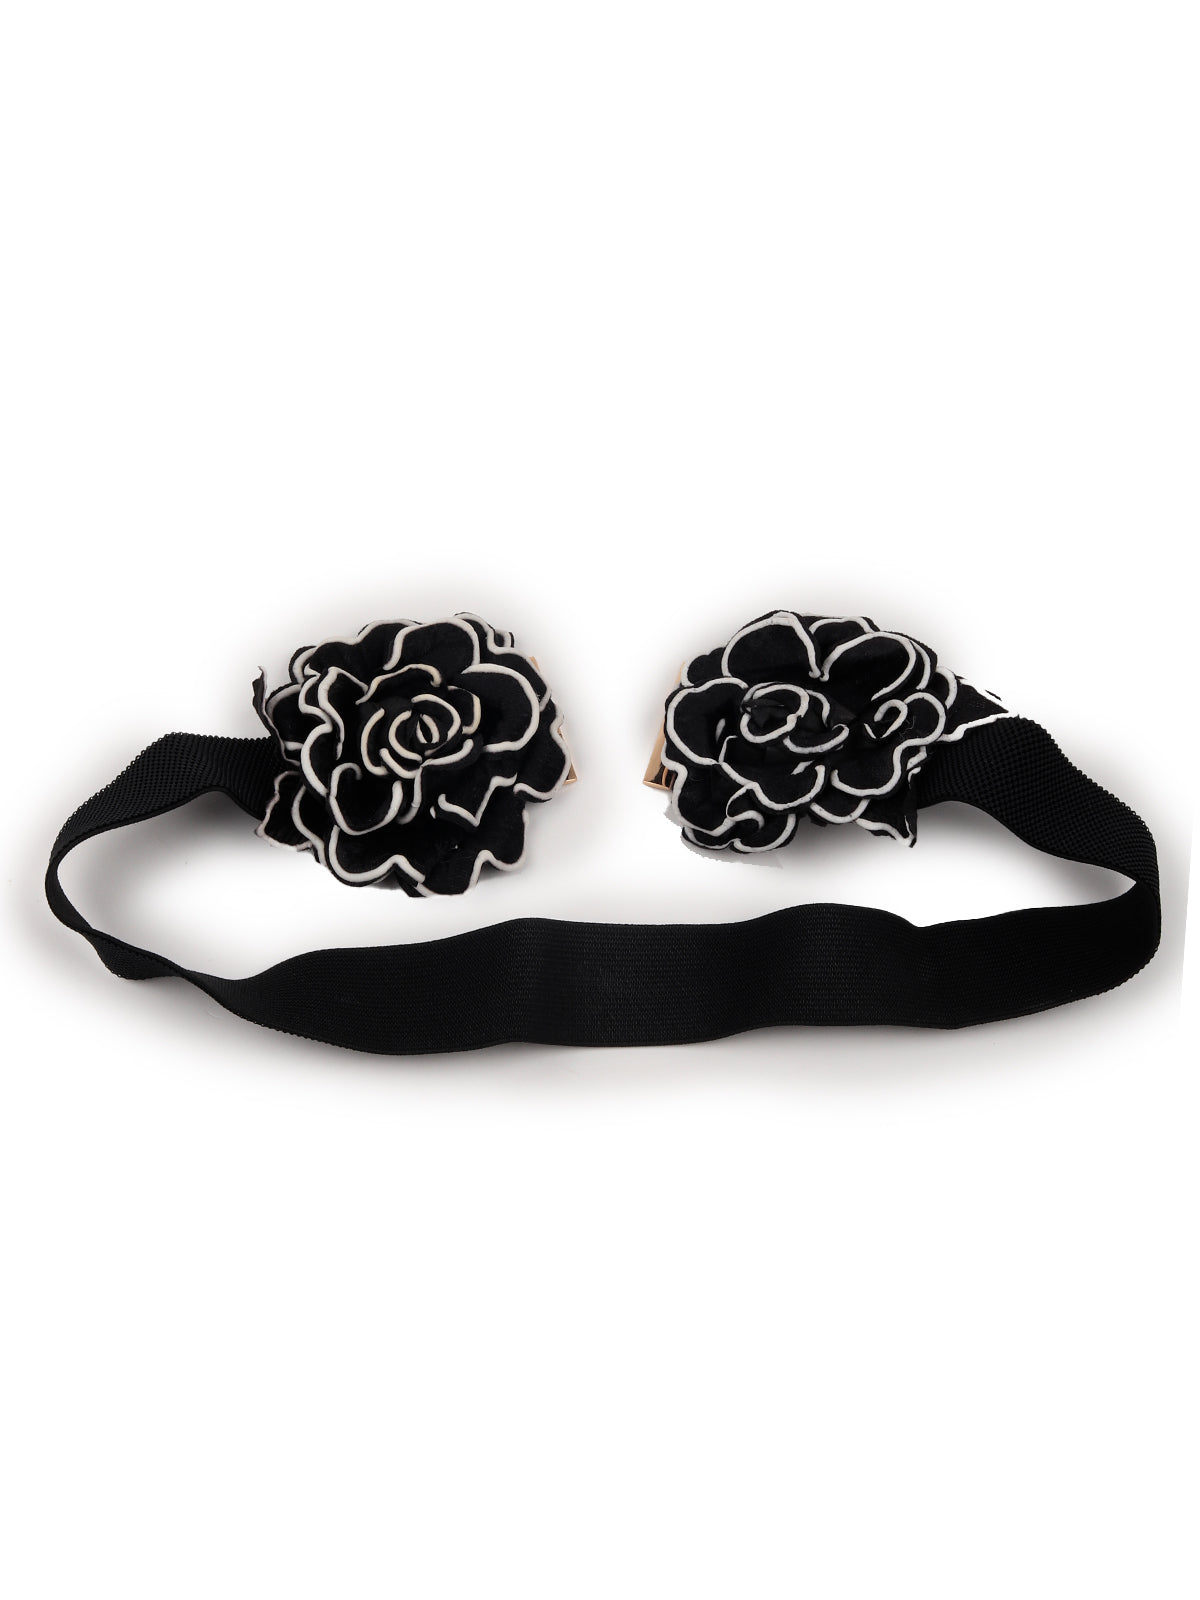 Odette Women Black Elastane Belt Embellished With Flower